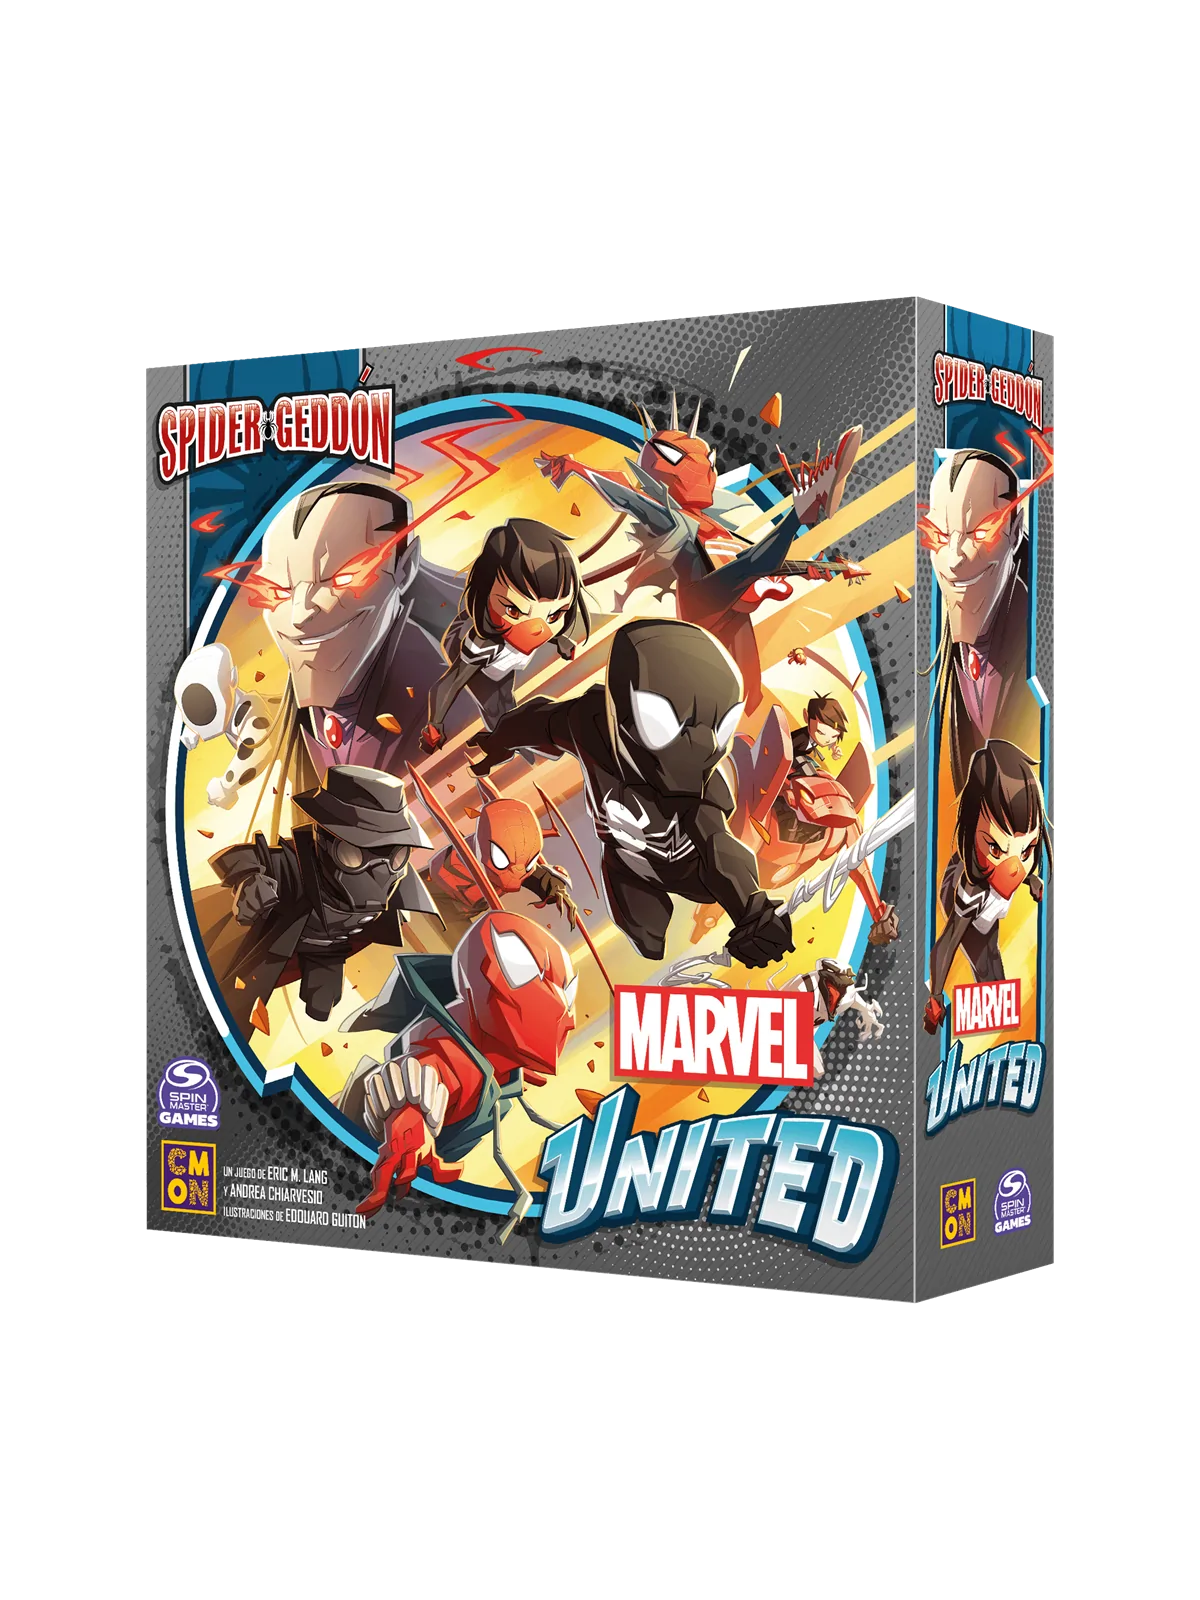 Comprar Marvel United: Spider-Geddon barato al mejor precio 33,96 € de